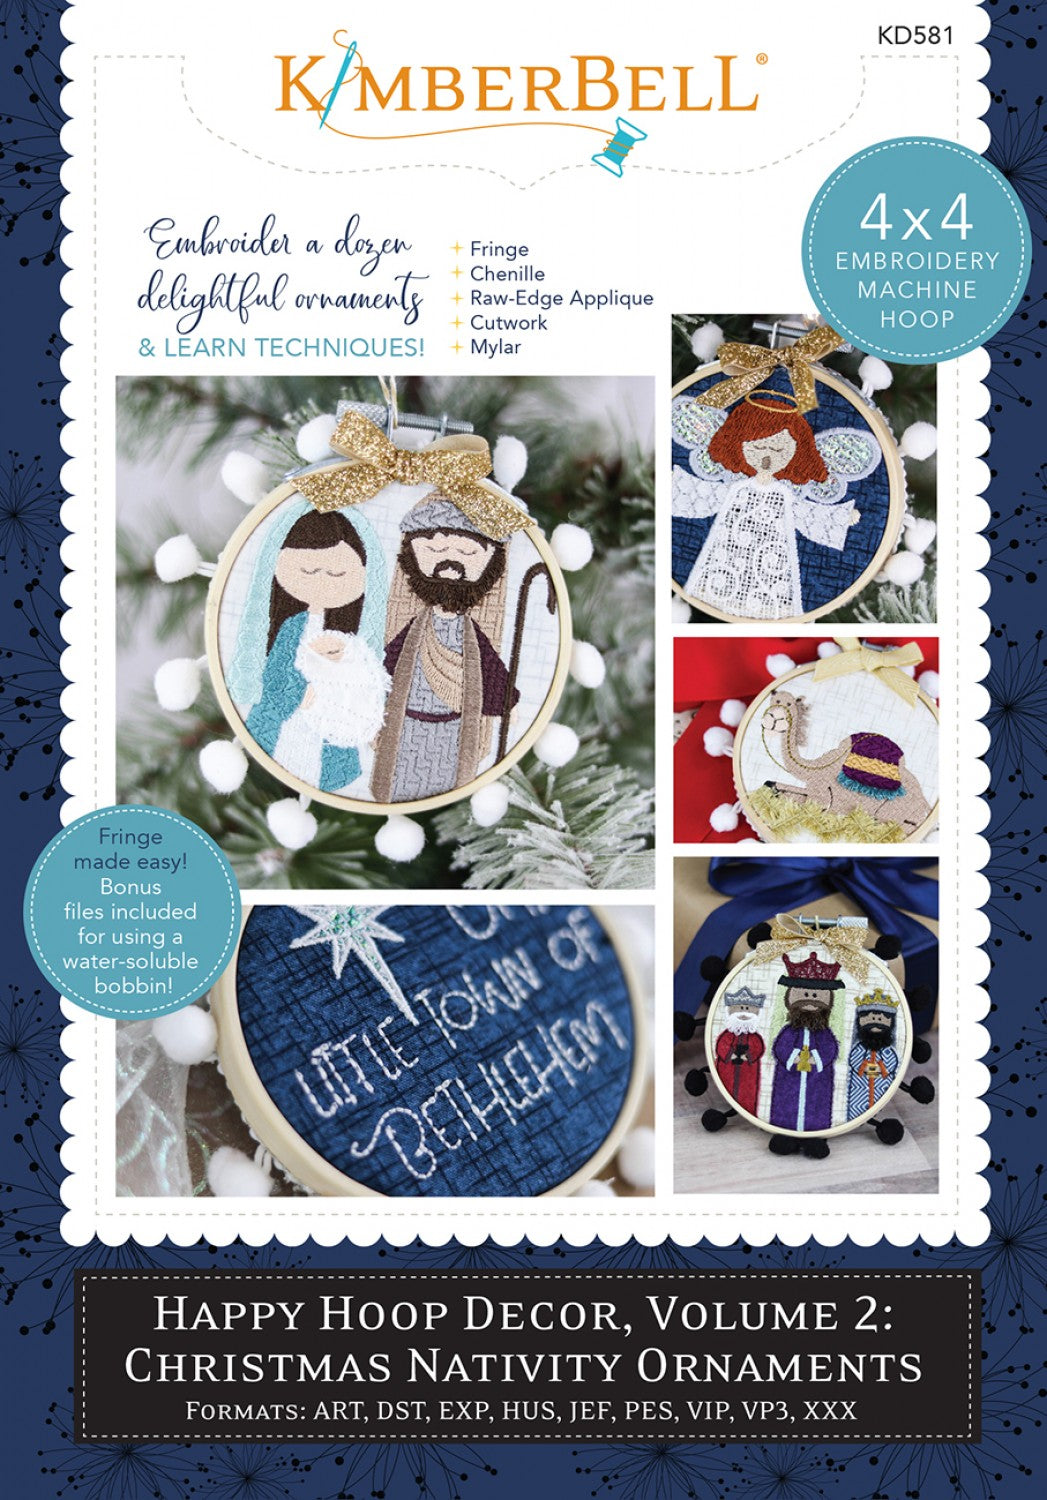 Happy Hoop Decor Volume 2 Christmas Nativity Ornaments - KD581 - Kimberbell